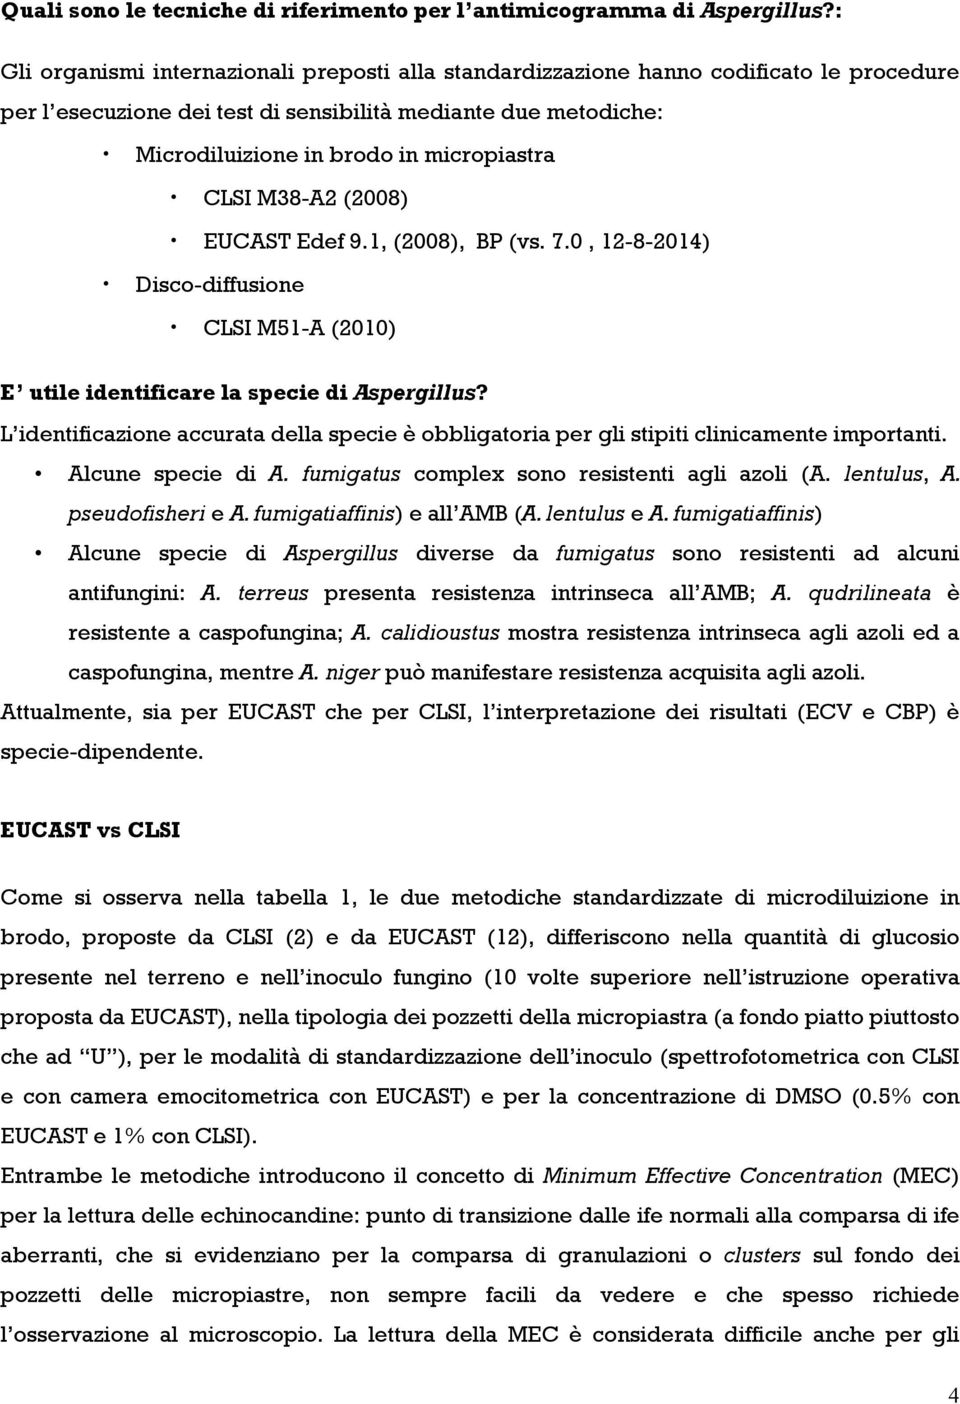 CLSI M38-A2 (2008) EUCAST Edef 9.1, (2008), BP (vs. 7.0, 12-8-2014) Disco-diffusione CLSI M51-A (2010) E utile identificare la specie di Aspergillus?